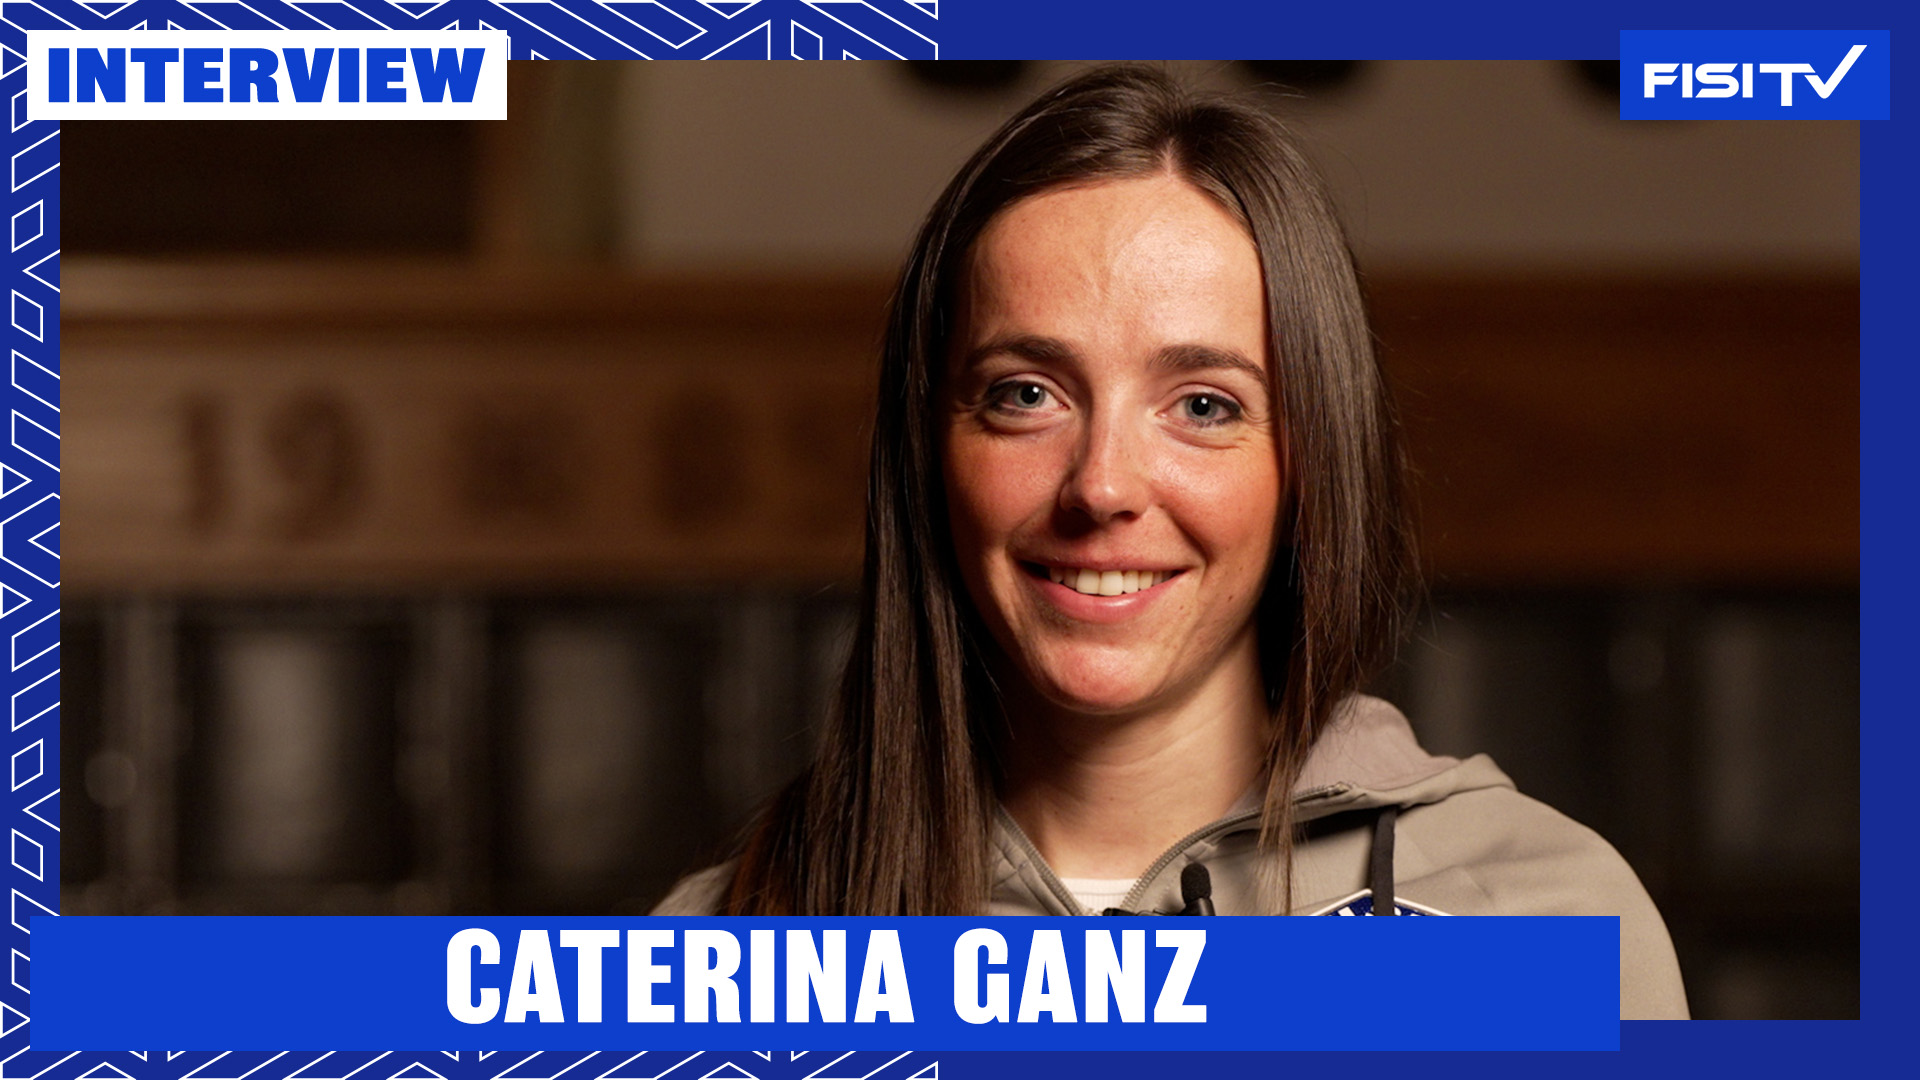 Caterina Ganz | “So quello che voglio e mi sento un’atleta molto più matura” | FISI TV